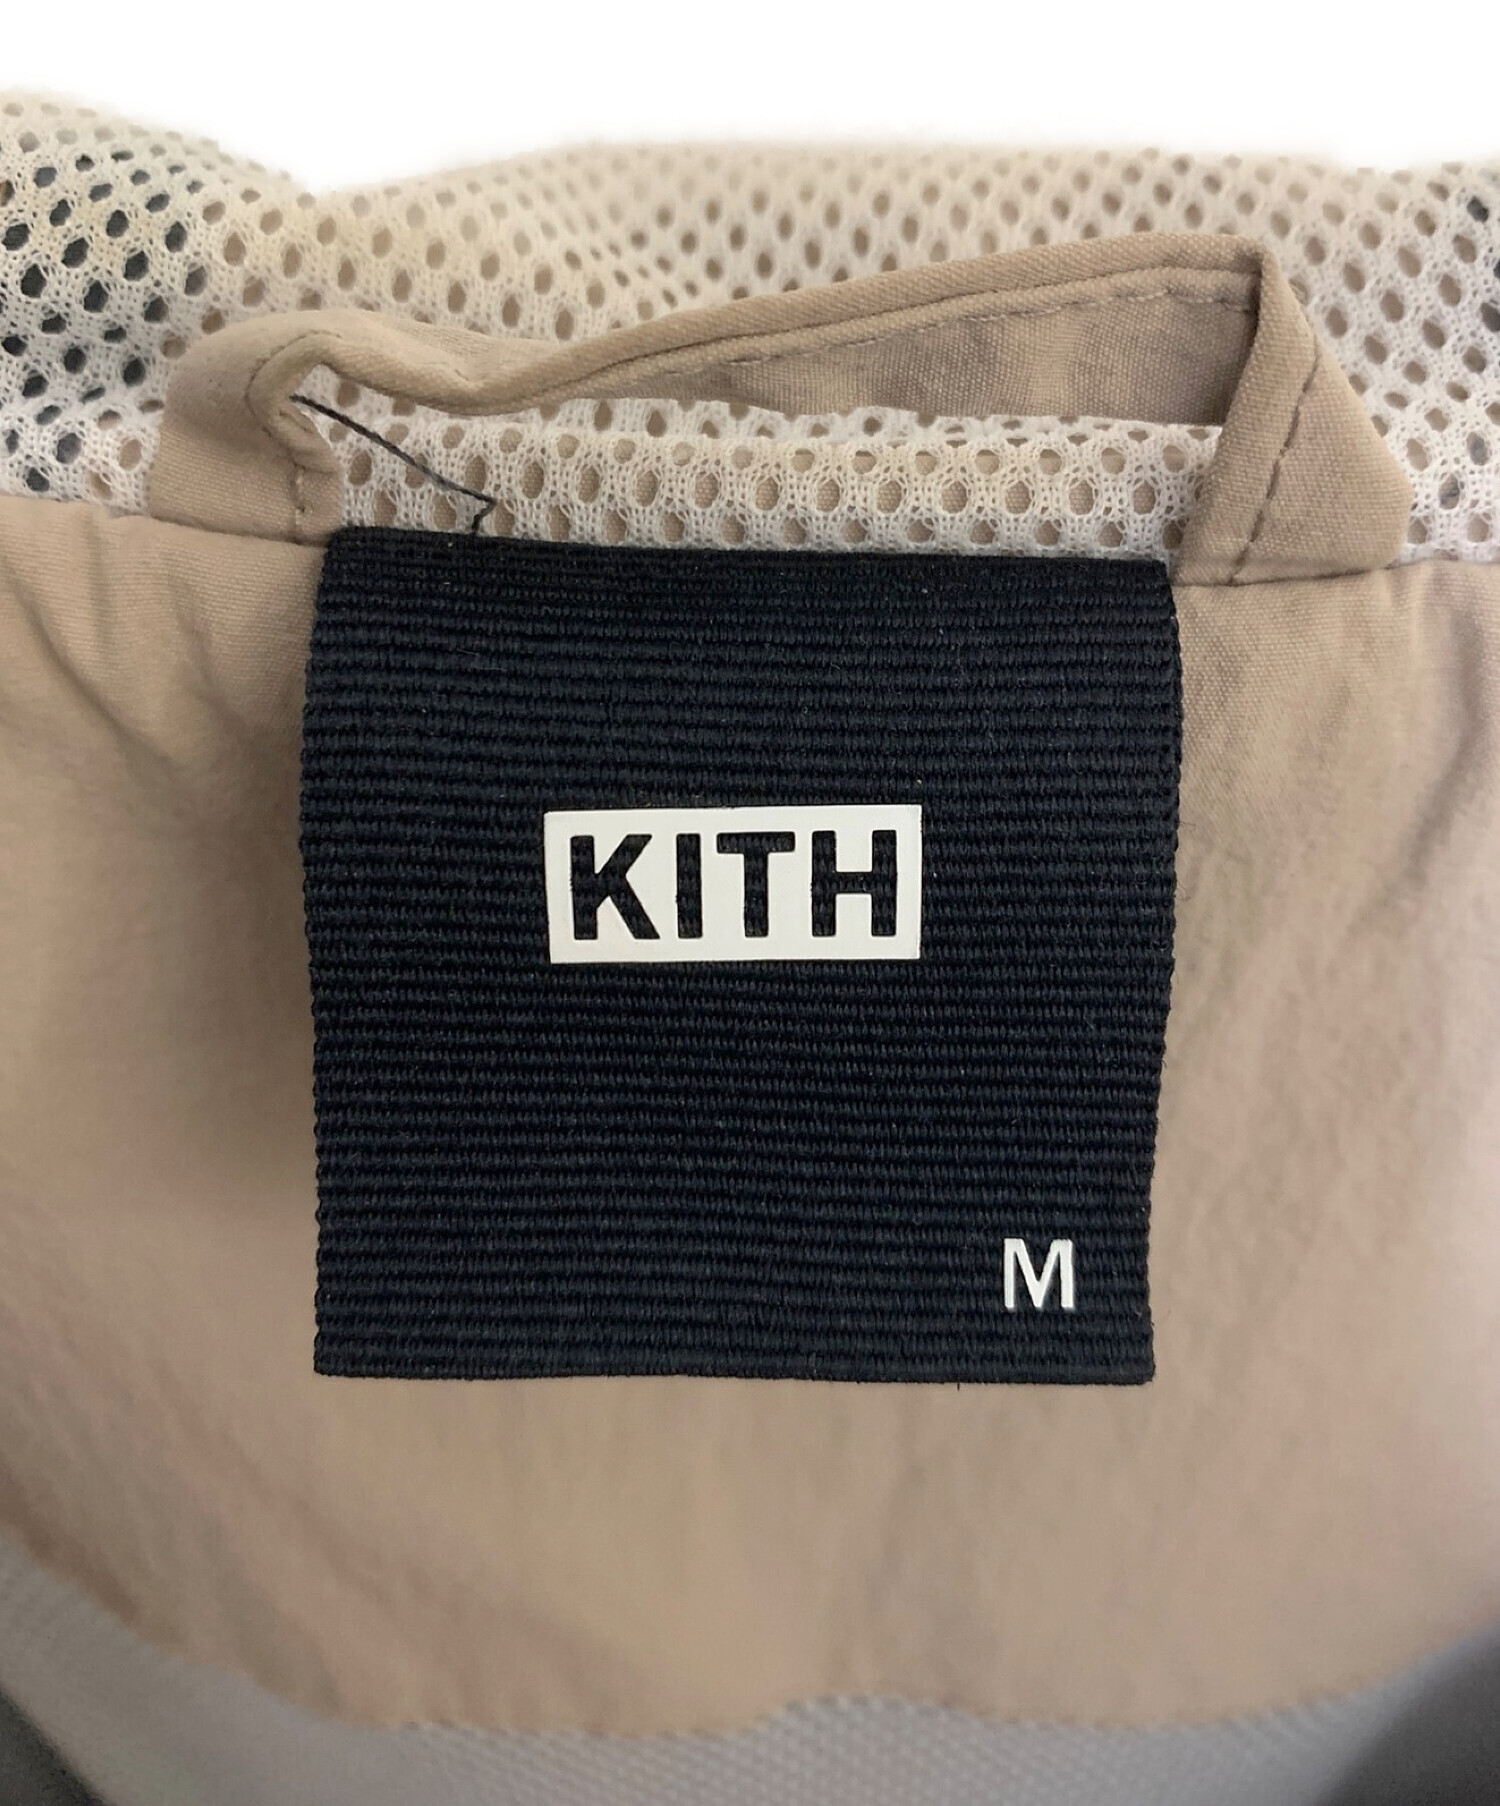 KITH (キス) マディソンジャケット グレー×ベージュ サイズ:M